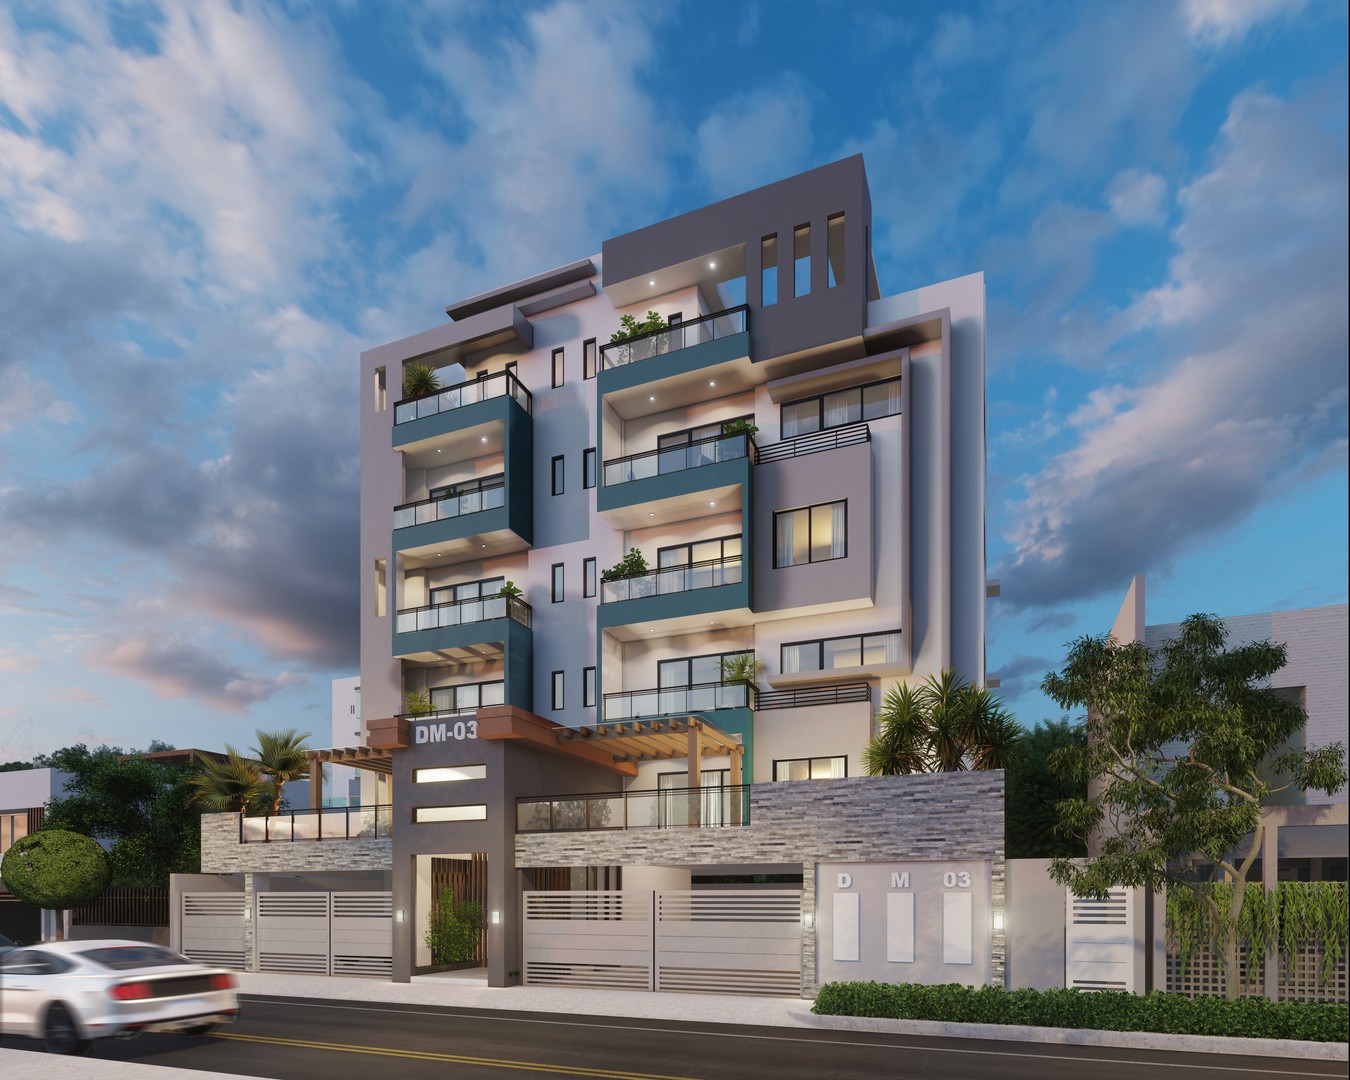 apartamentos - Apartamentos en venta, con ascensor y planta eléctrica (DM-03), Aut. San Isidro 